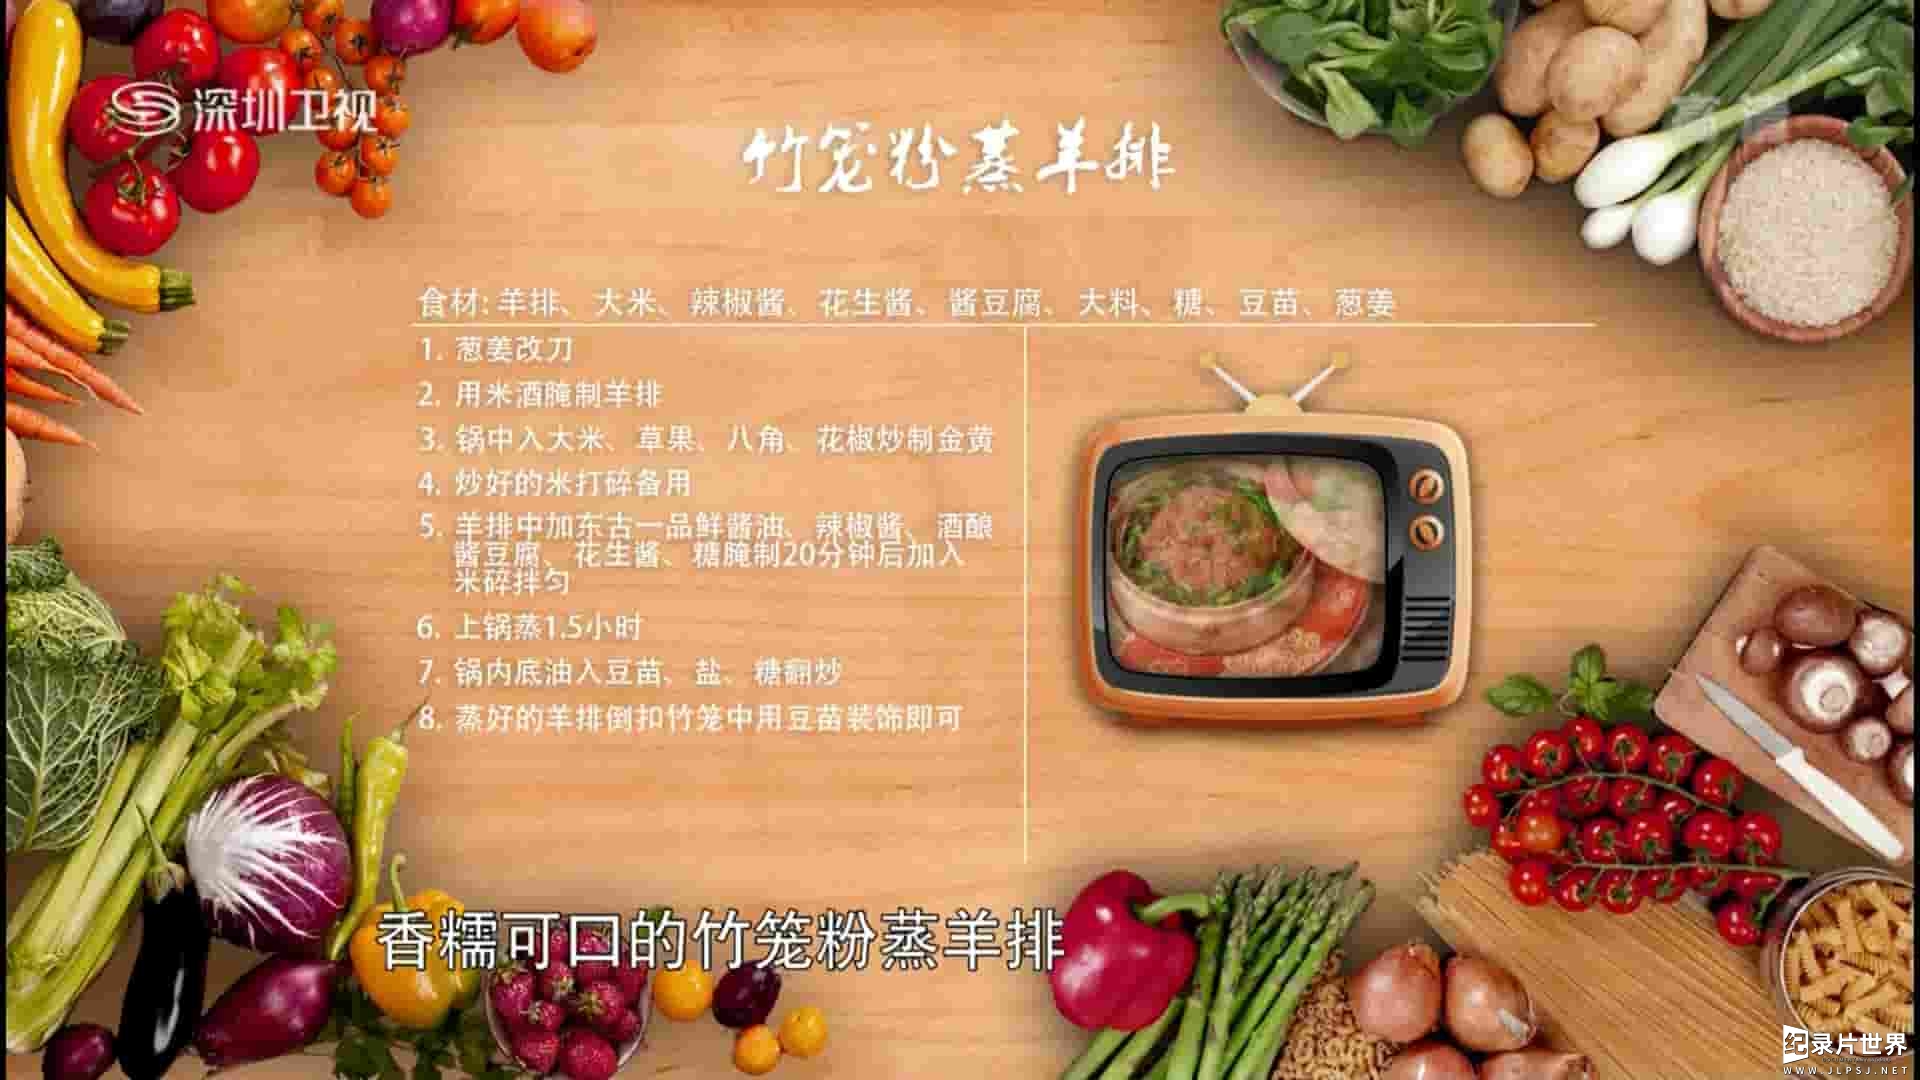 深圳卫视《悦·美食 重温红楼·醉飨古宴 2017》全1集